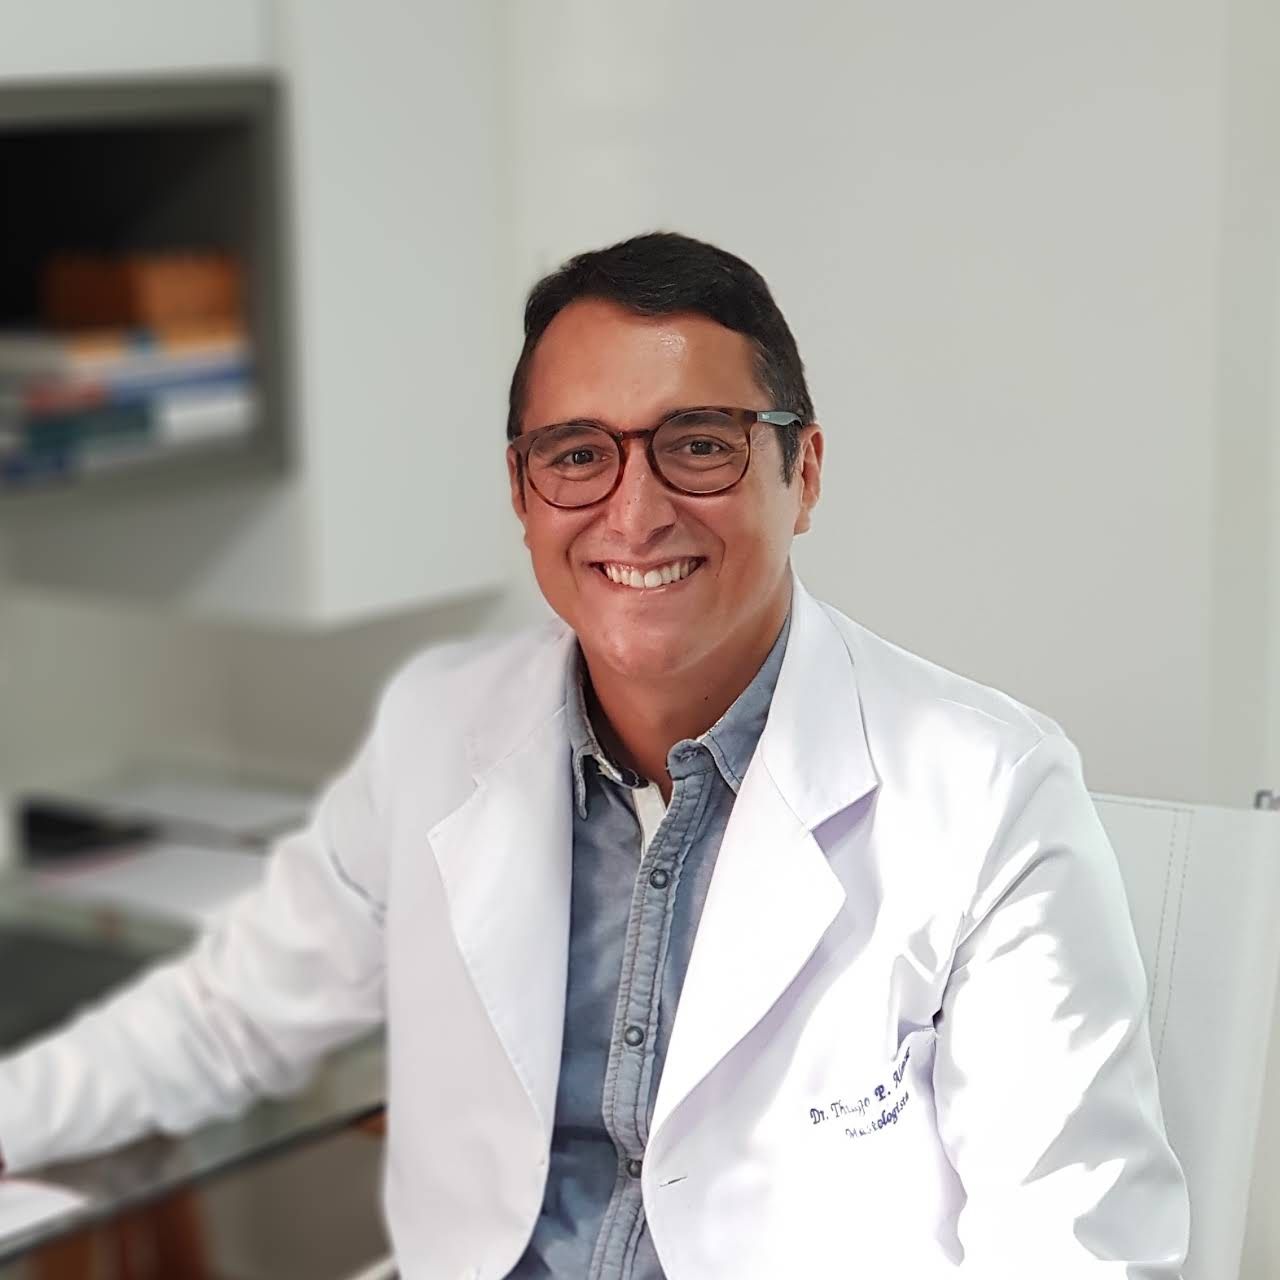 Médico mastologista e cirurgião Dr. Thiago Alencar comemora chegada do acelerador linear para o Hospital do Bem em Patos; ouça